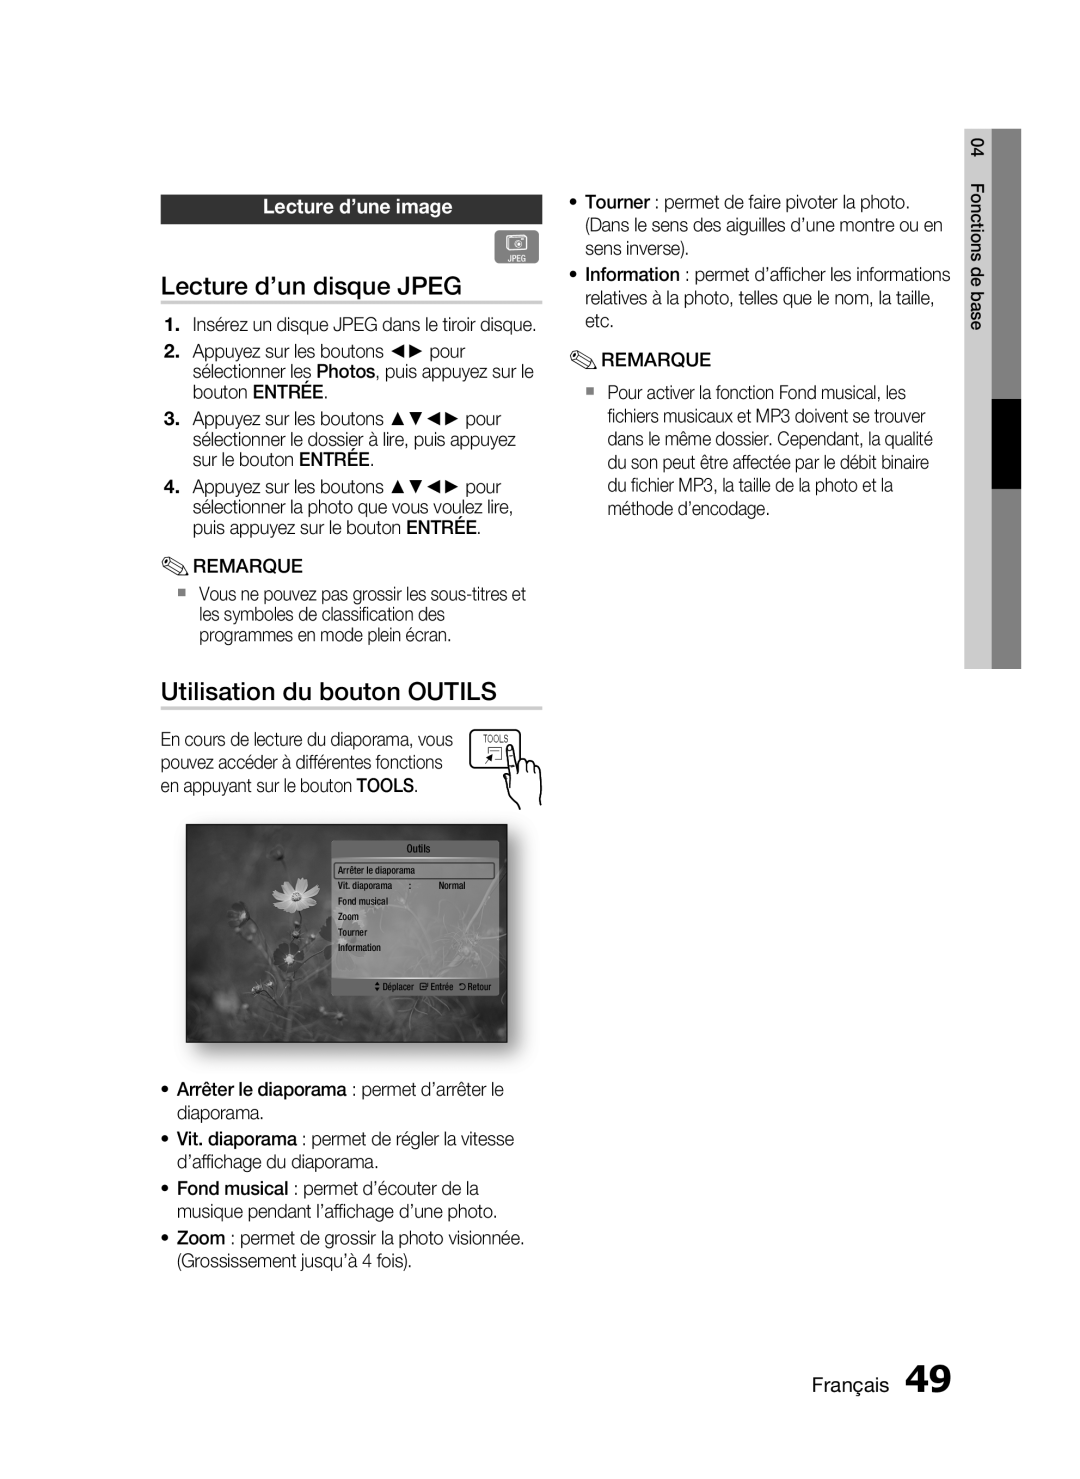 Samsung HT-C6200/XEF manual Lecture d’un disque JPEG, Utilisation du bouton OUTILS, Lecture d’une image, Français 